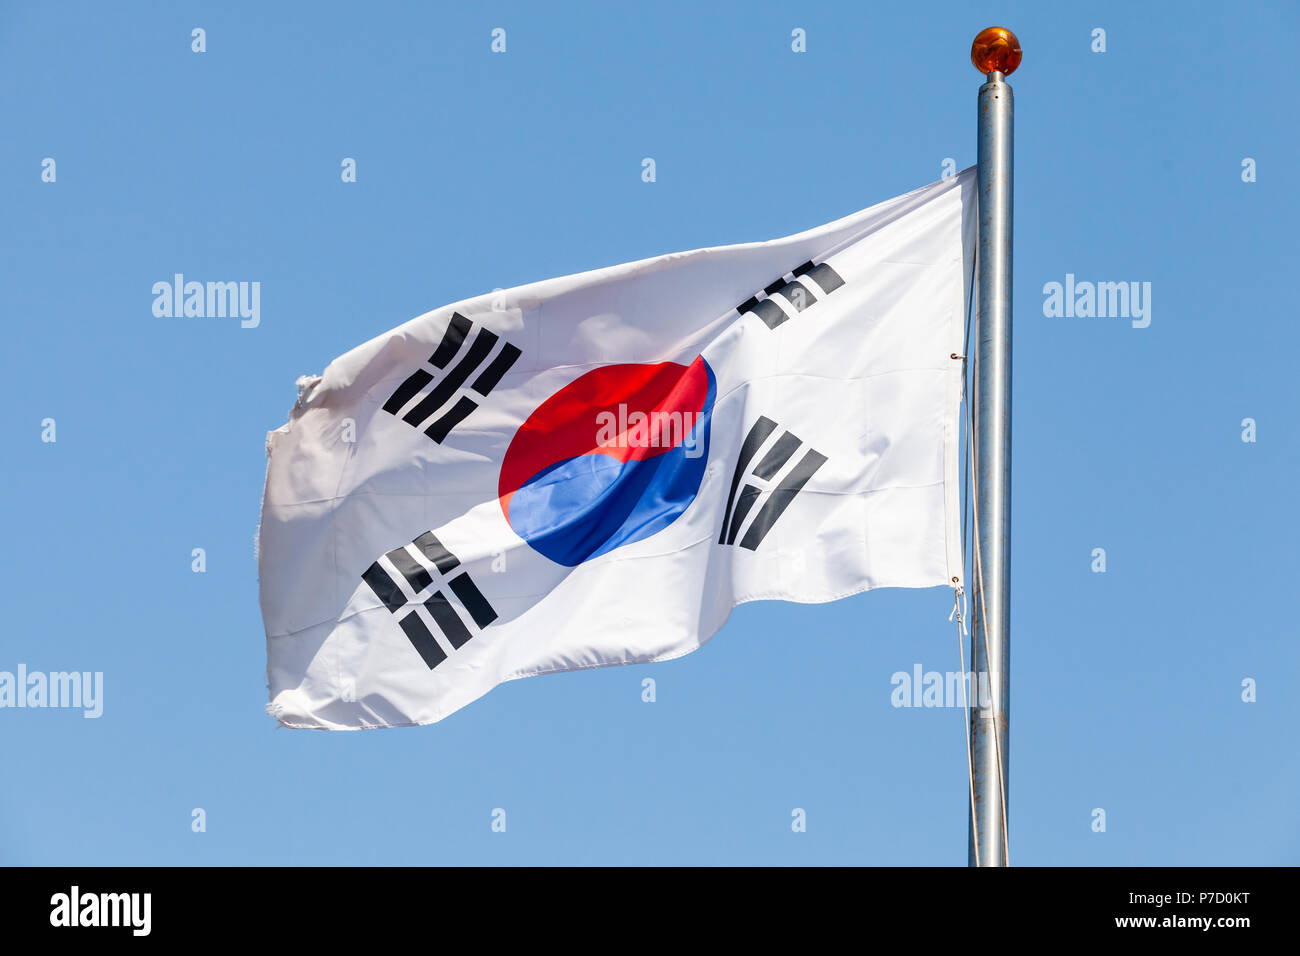 Drapeau de la Corée du Sud, également connu sous le nom de Taegukgi forme sur un mât sur fond de ciel bleu Banque D'Images